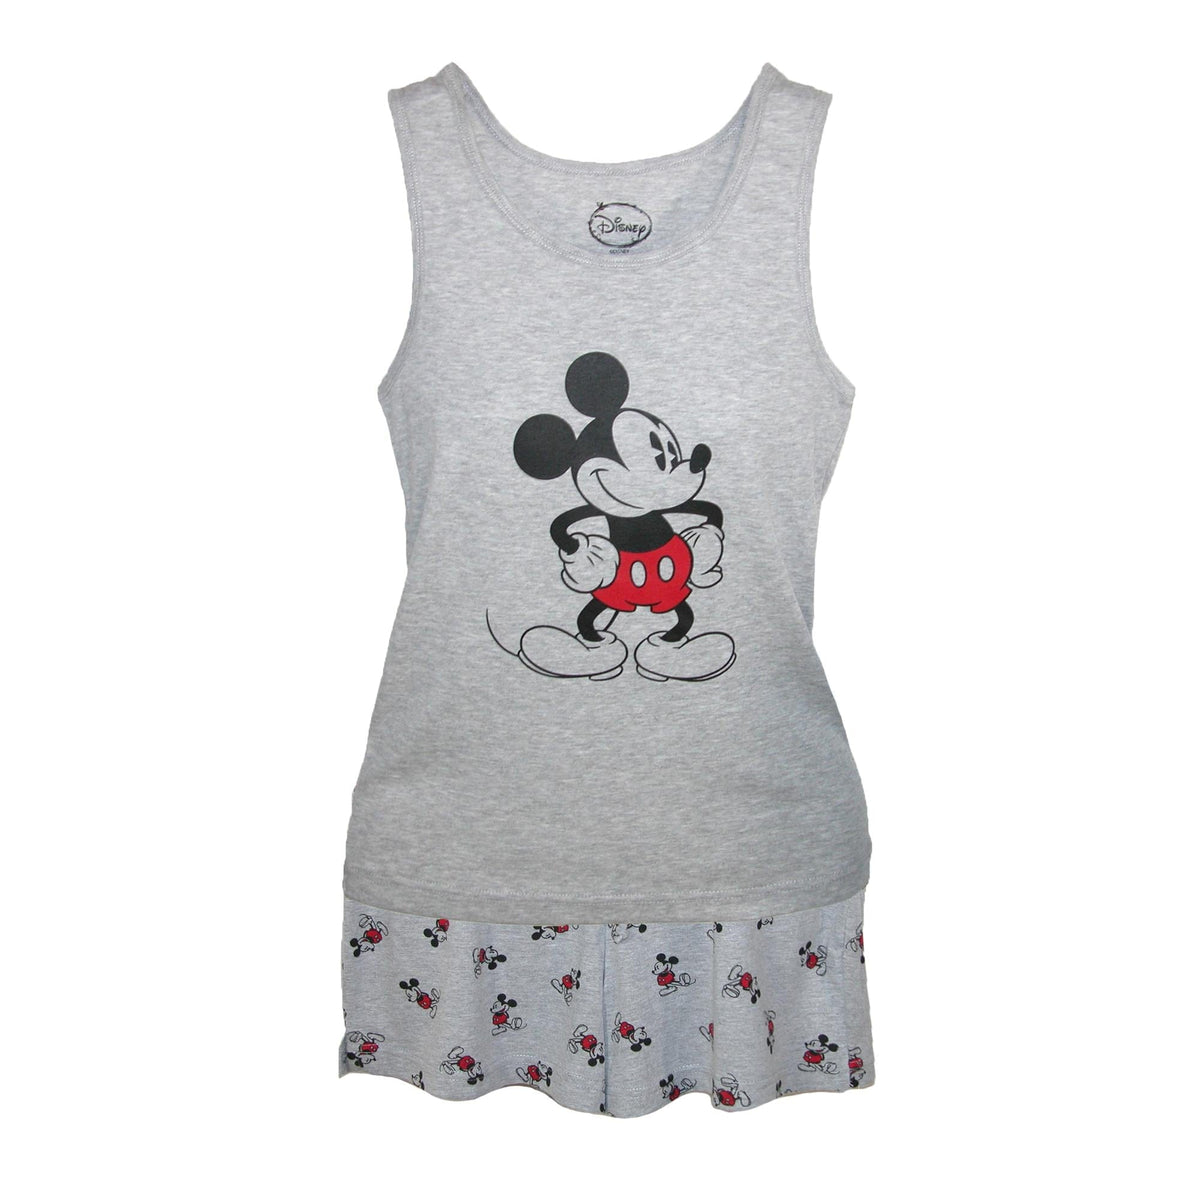 Mickey Mouse Tank and Shorts Pajama Set by Disney | Short Pajama Sets ...